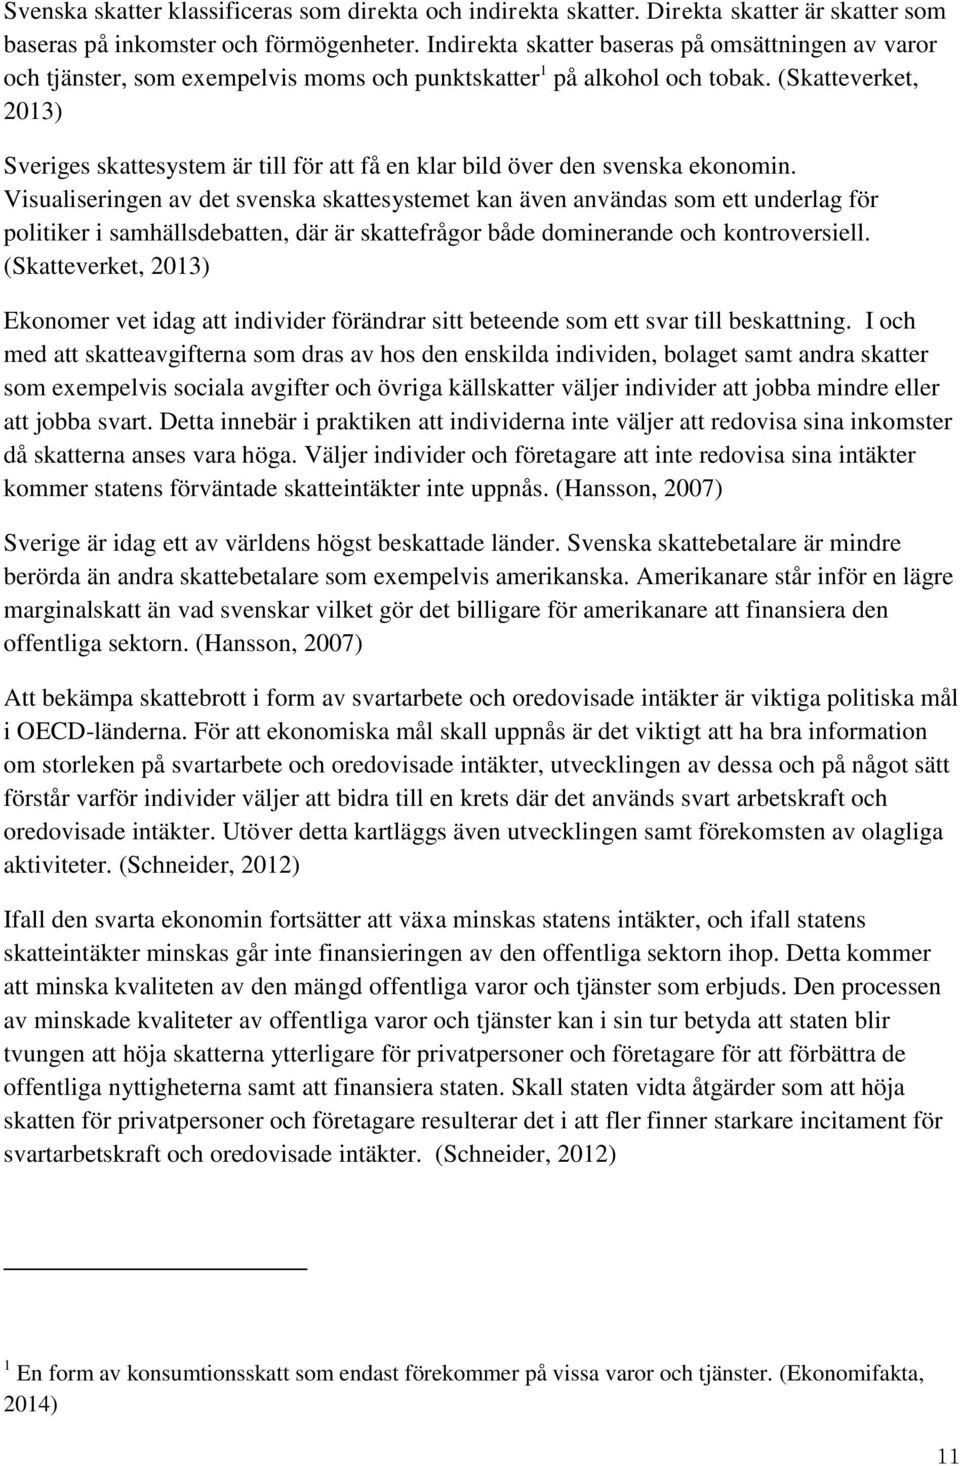 (Skatteverket, 2013) Sveriges skattesystem är till för att få en klar bild över den svenska ekonomin.